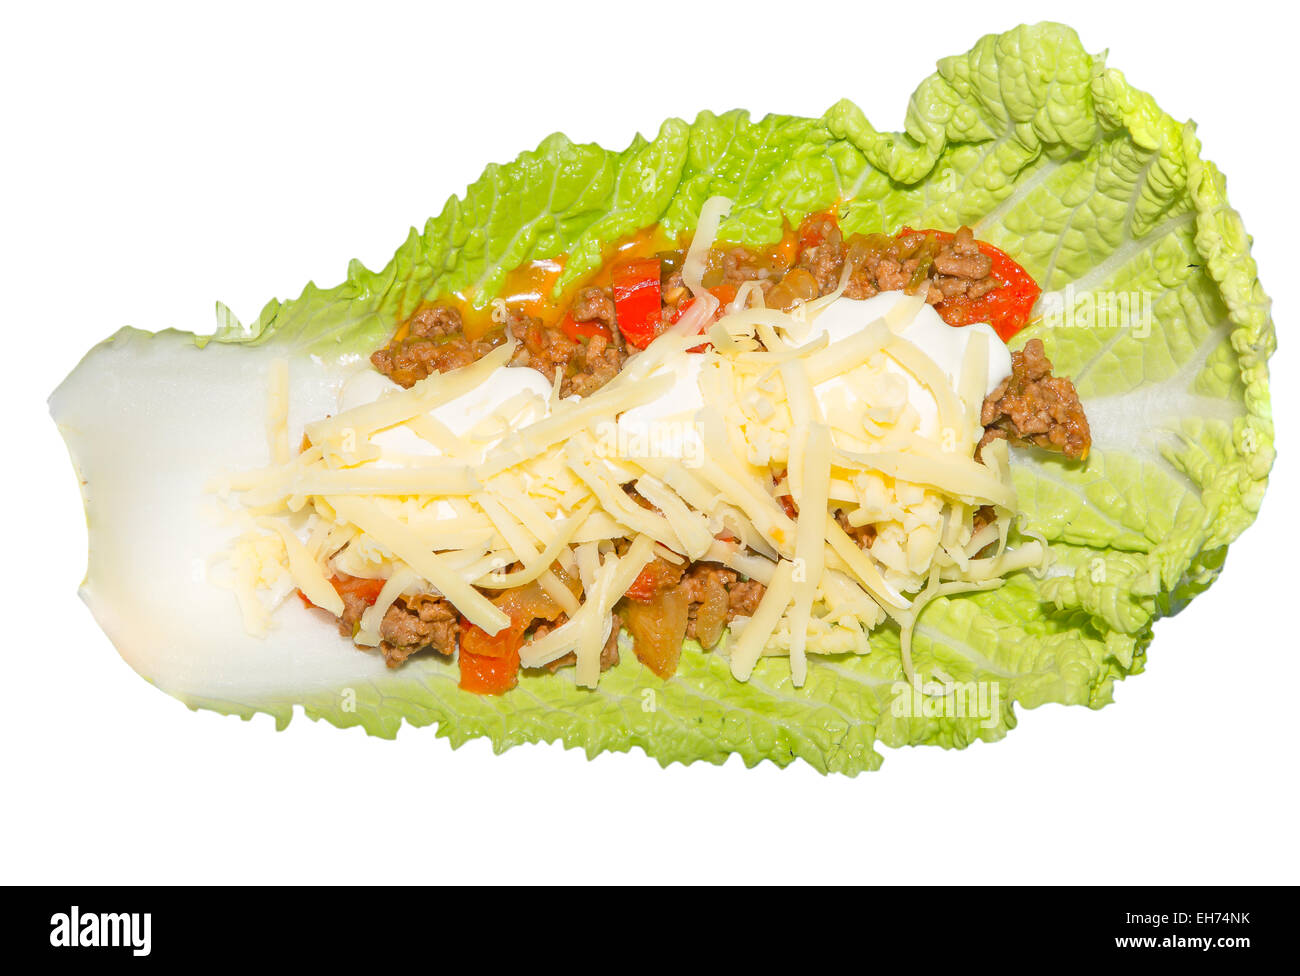 Immagine di una foglia di insalata con un impasto di carne con panna acida e formaggio Foto Stock